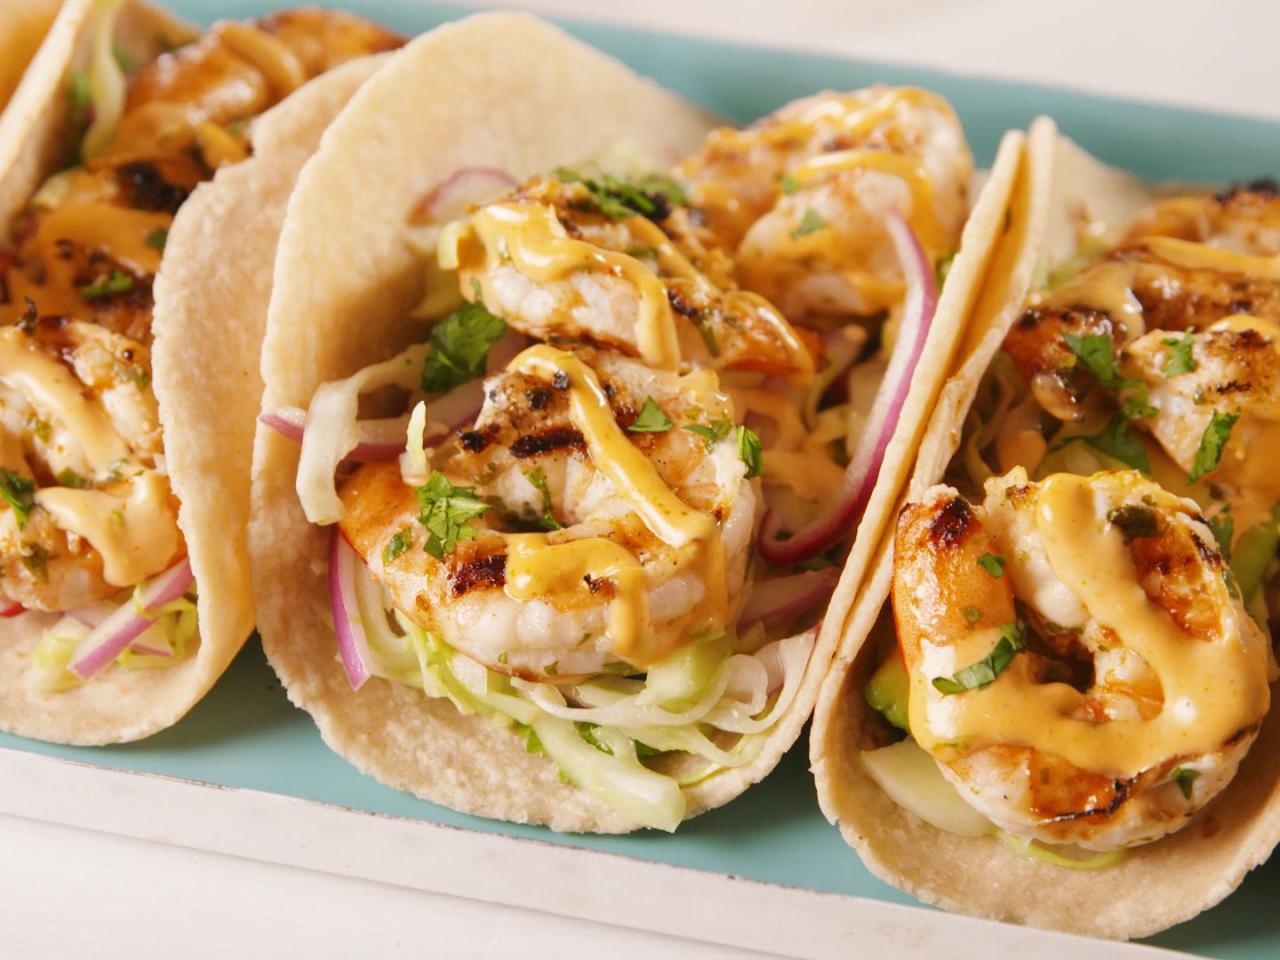 Best Shrimp Tacos Recipe - How to Make Cilantro-Shrimp Tacos